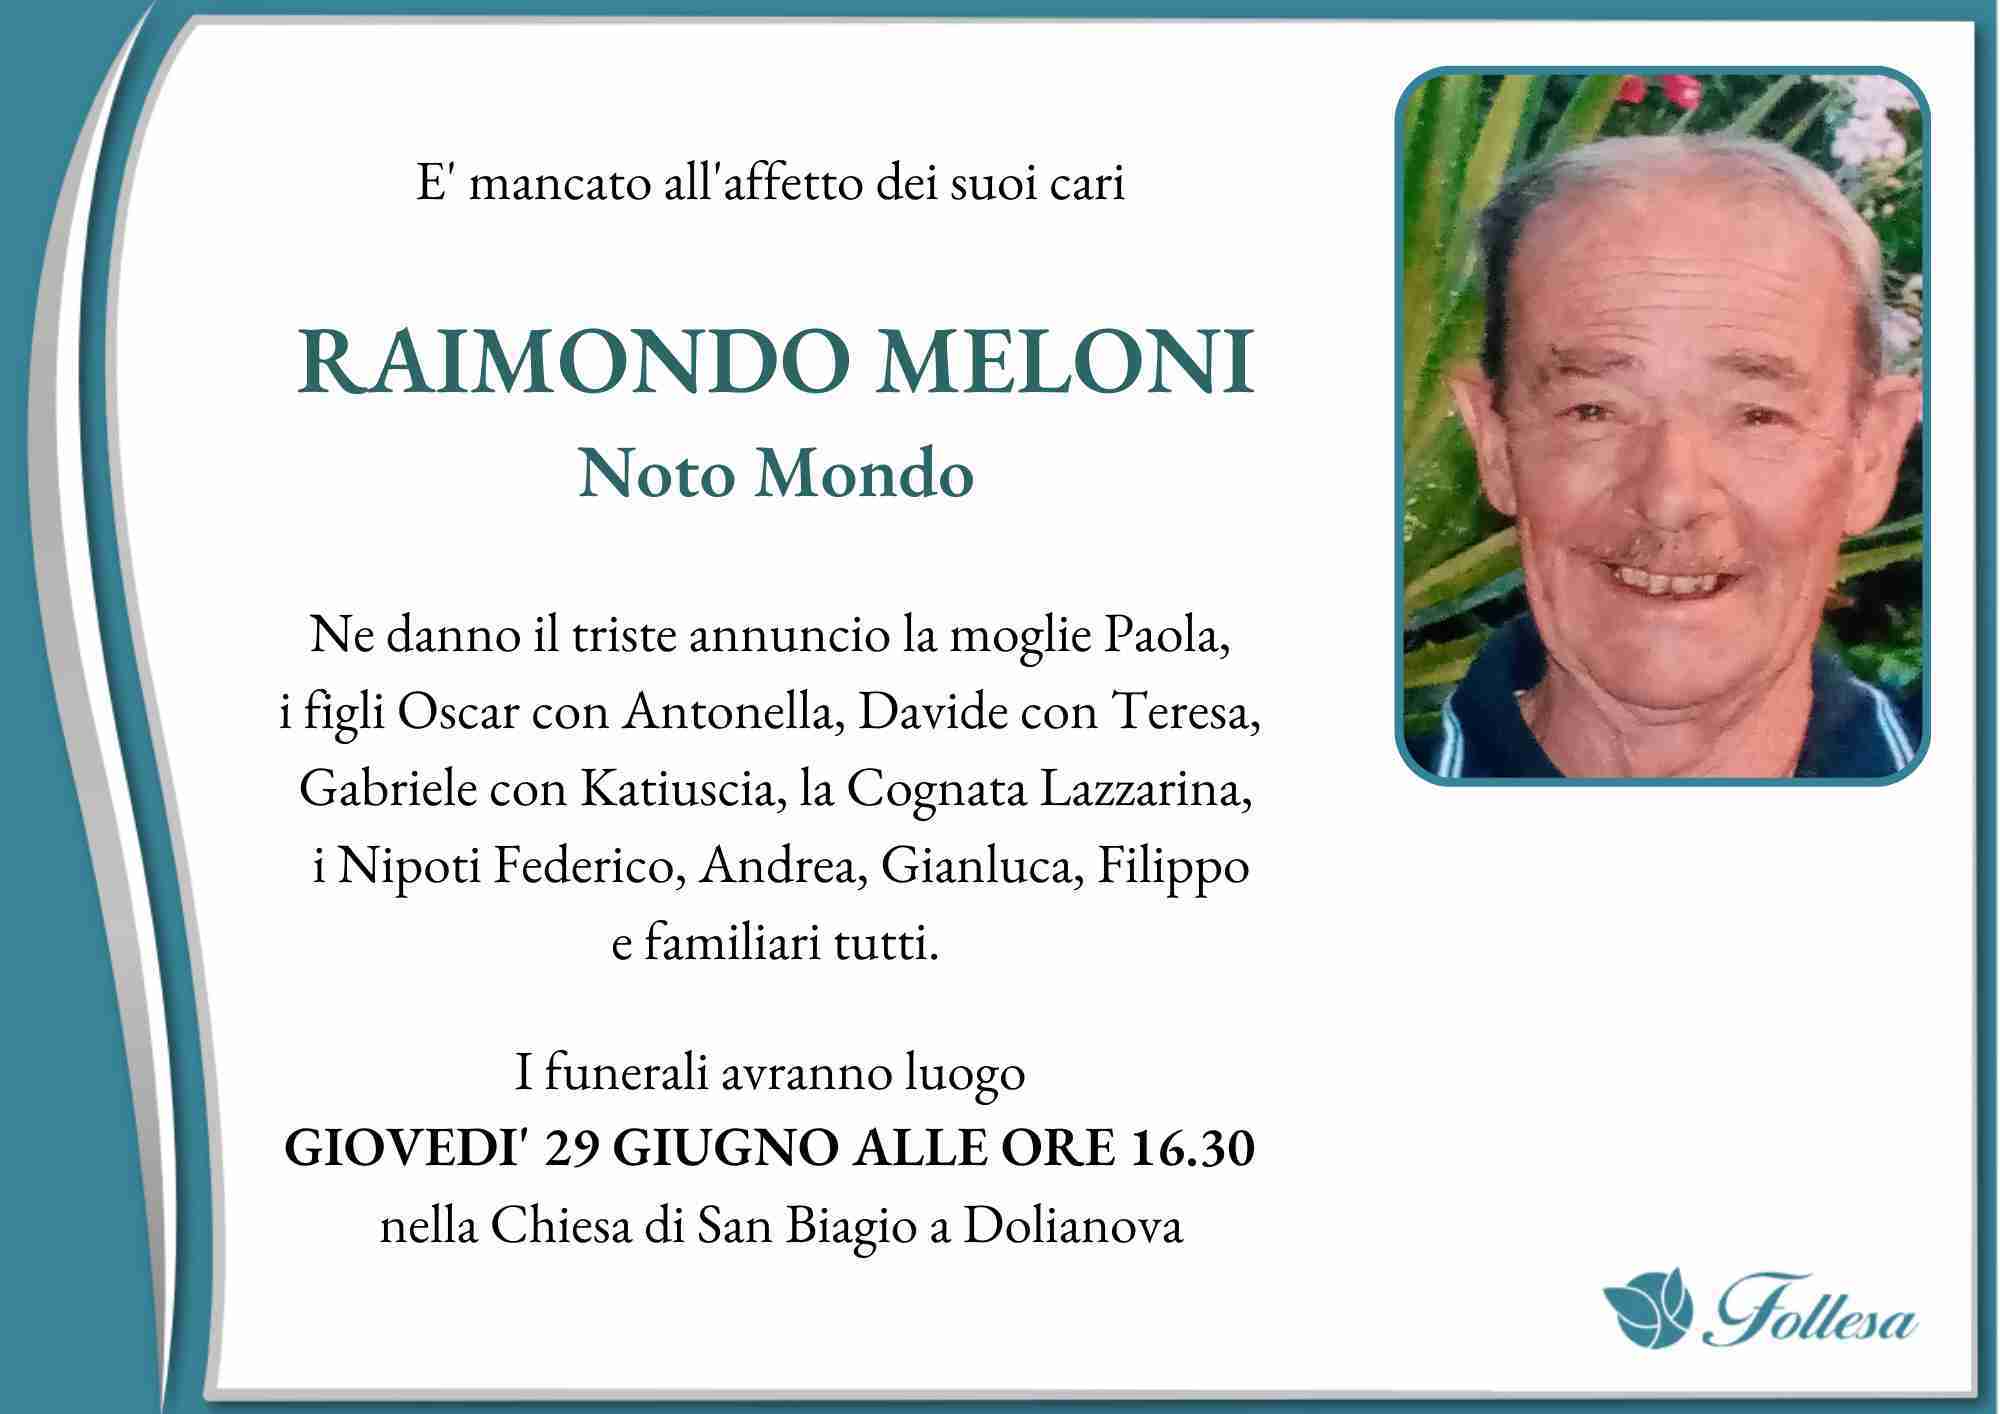 Raimondo Meloni